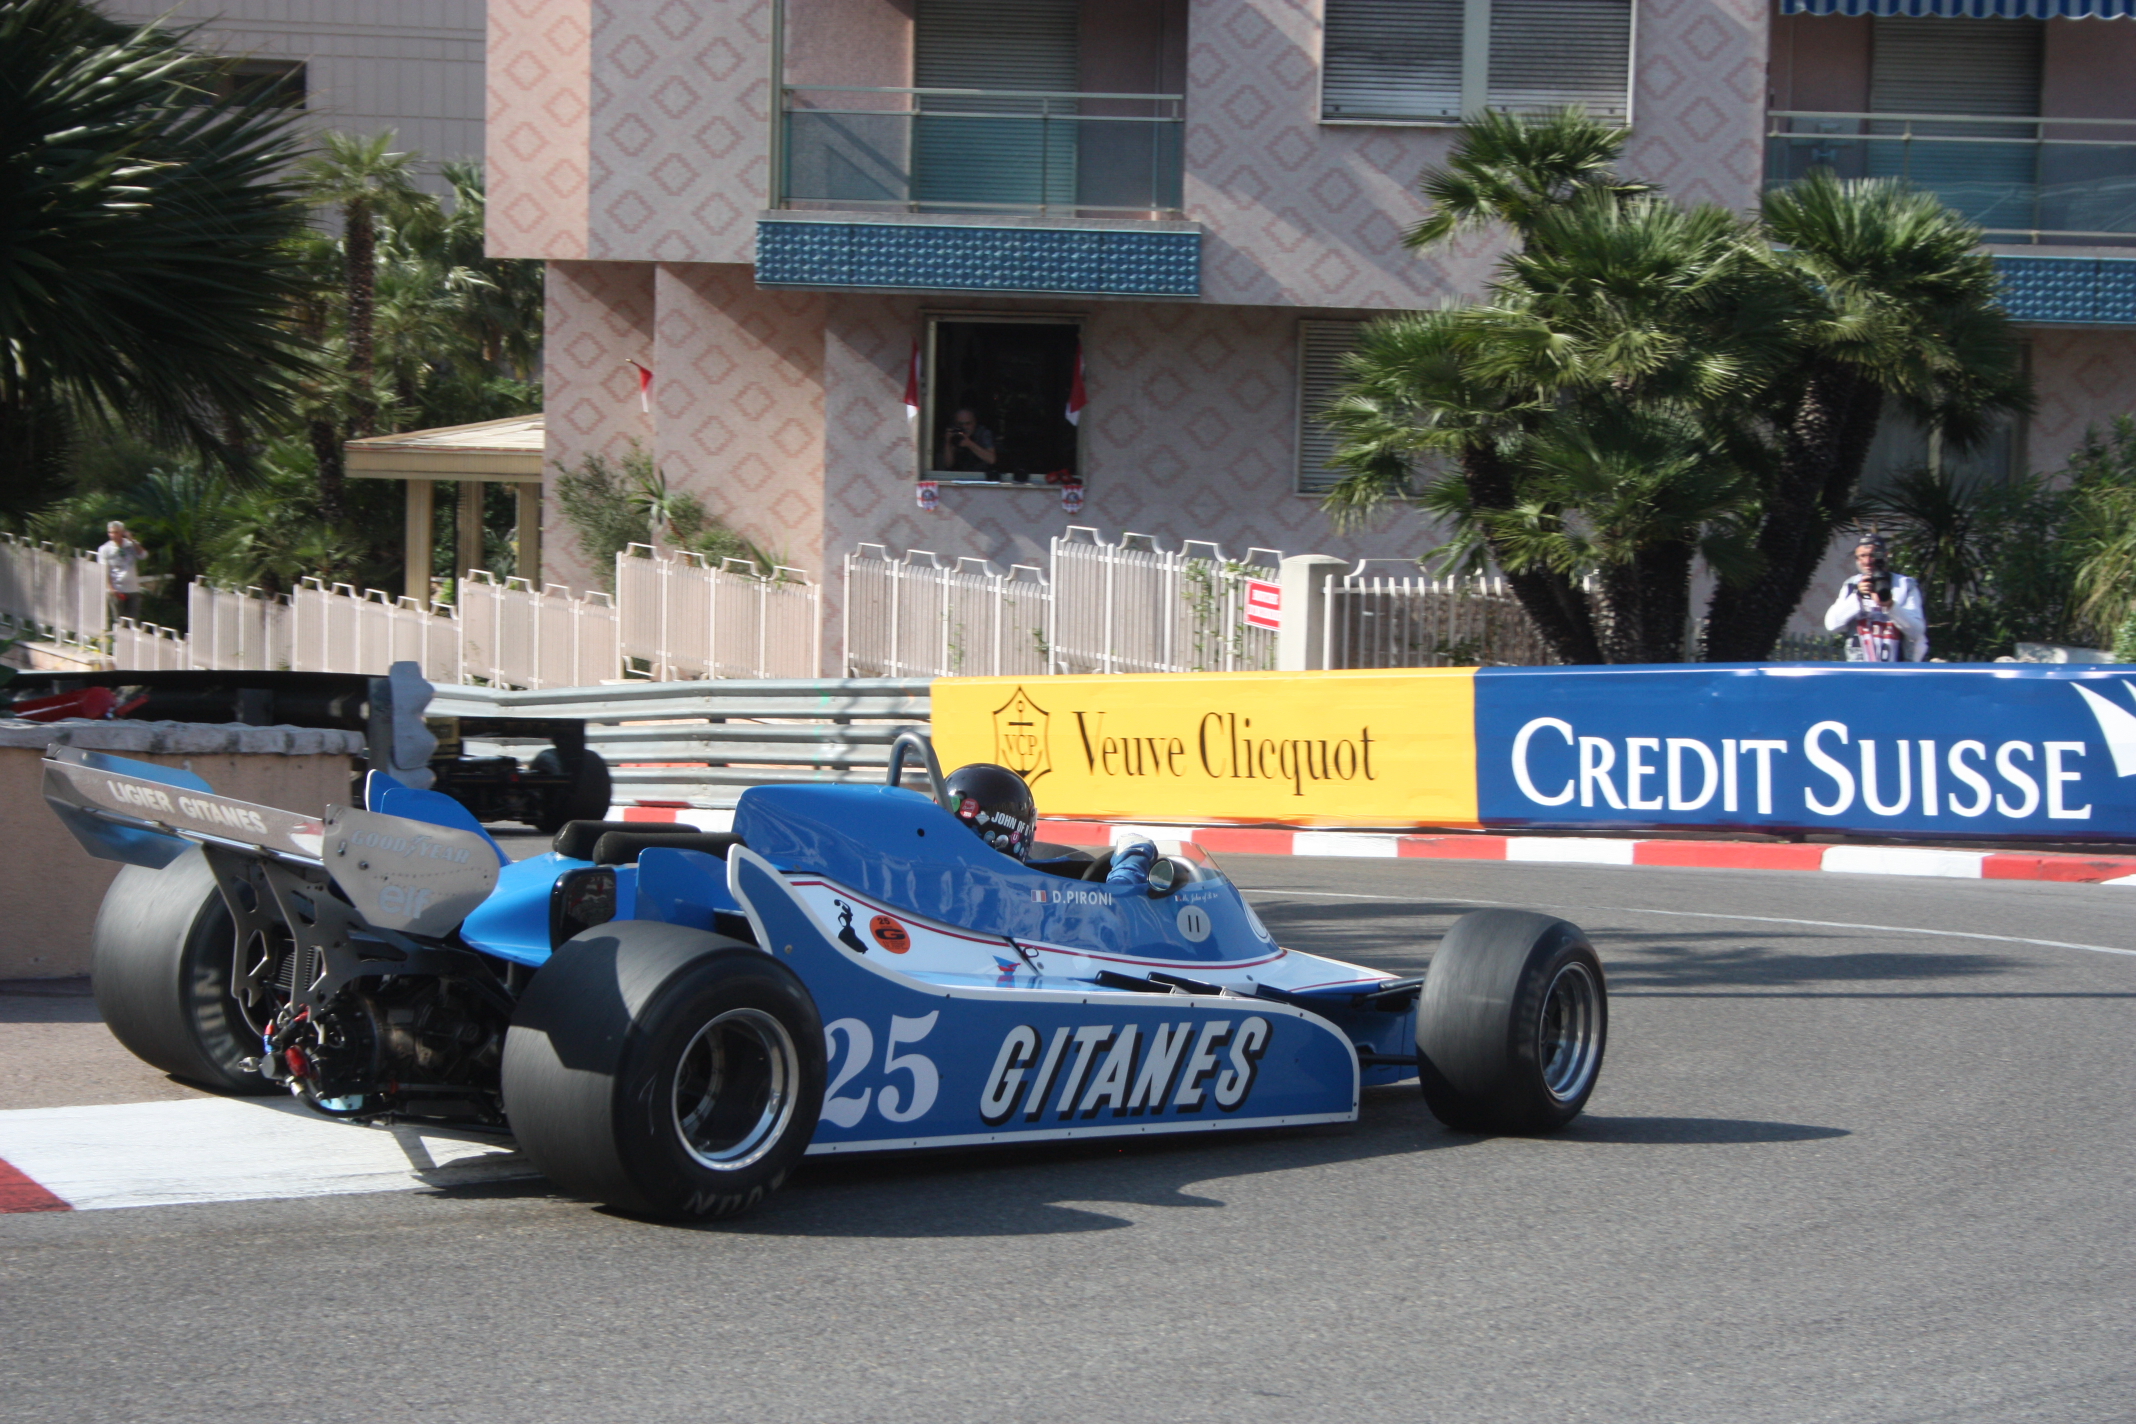 Účast francouzských vozů byla podivuhodně nízká: Ligier JS11 byl jedním z mála